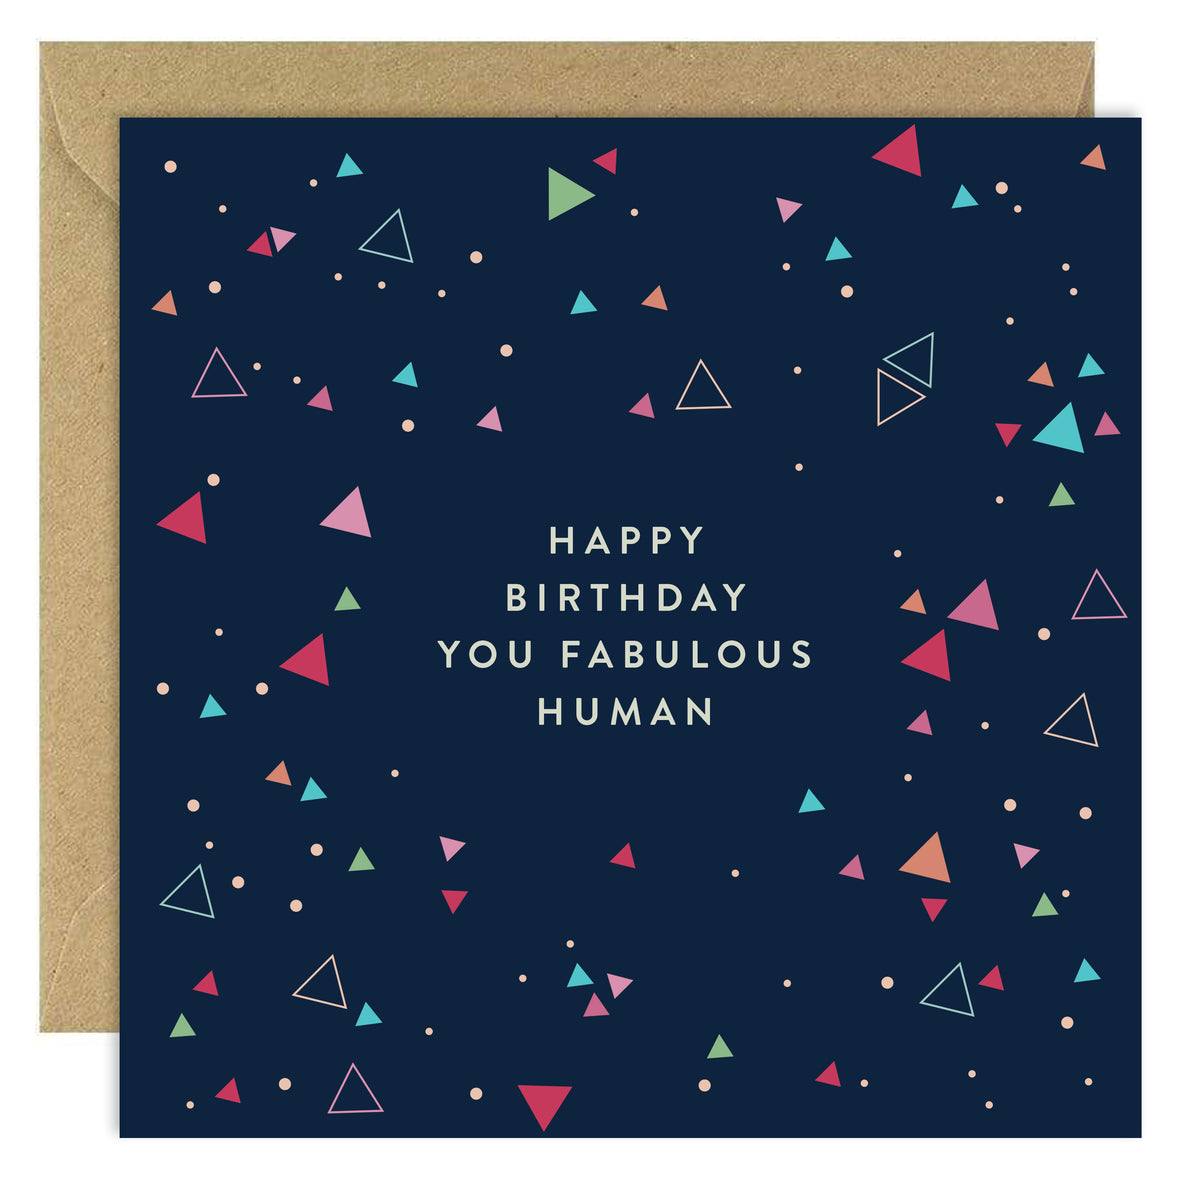 Happy Birthday You Fabulous Human